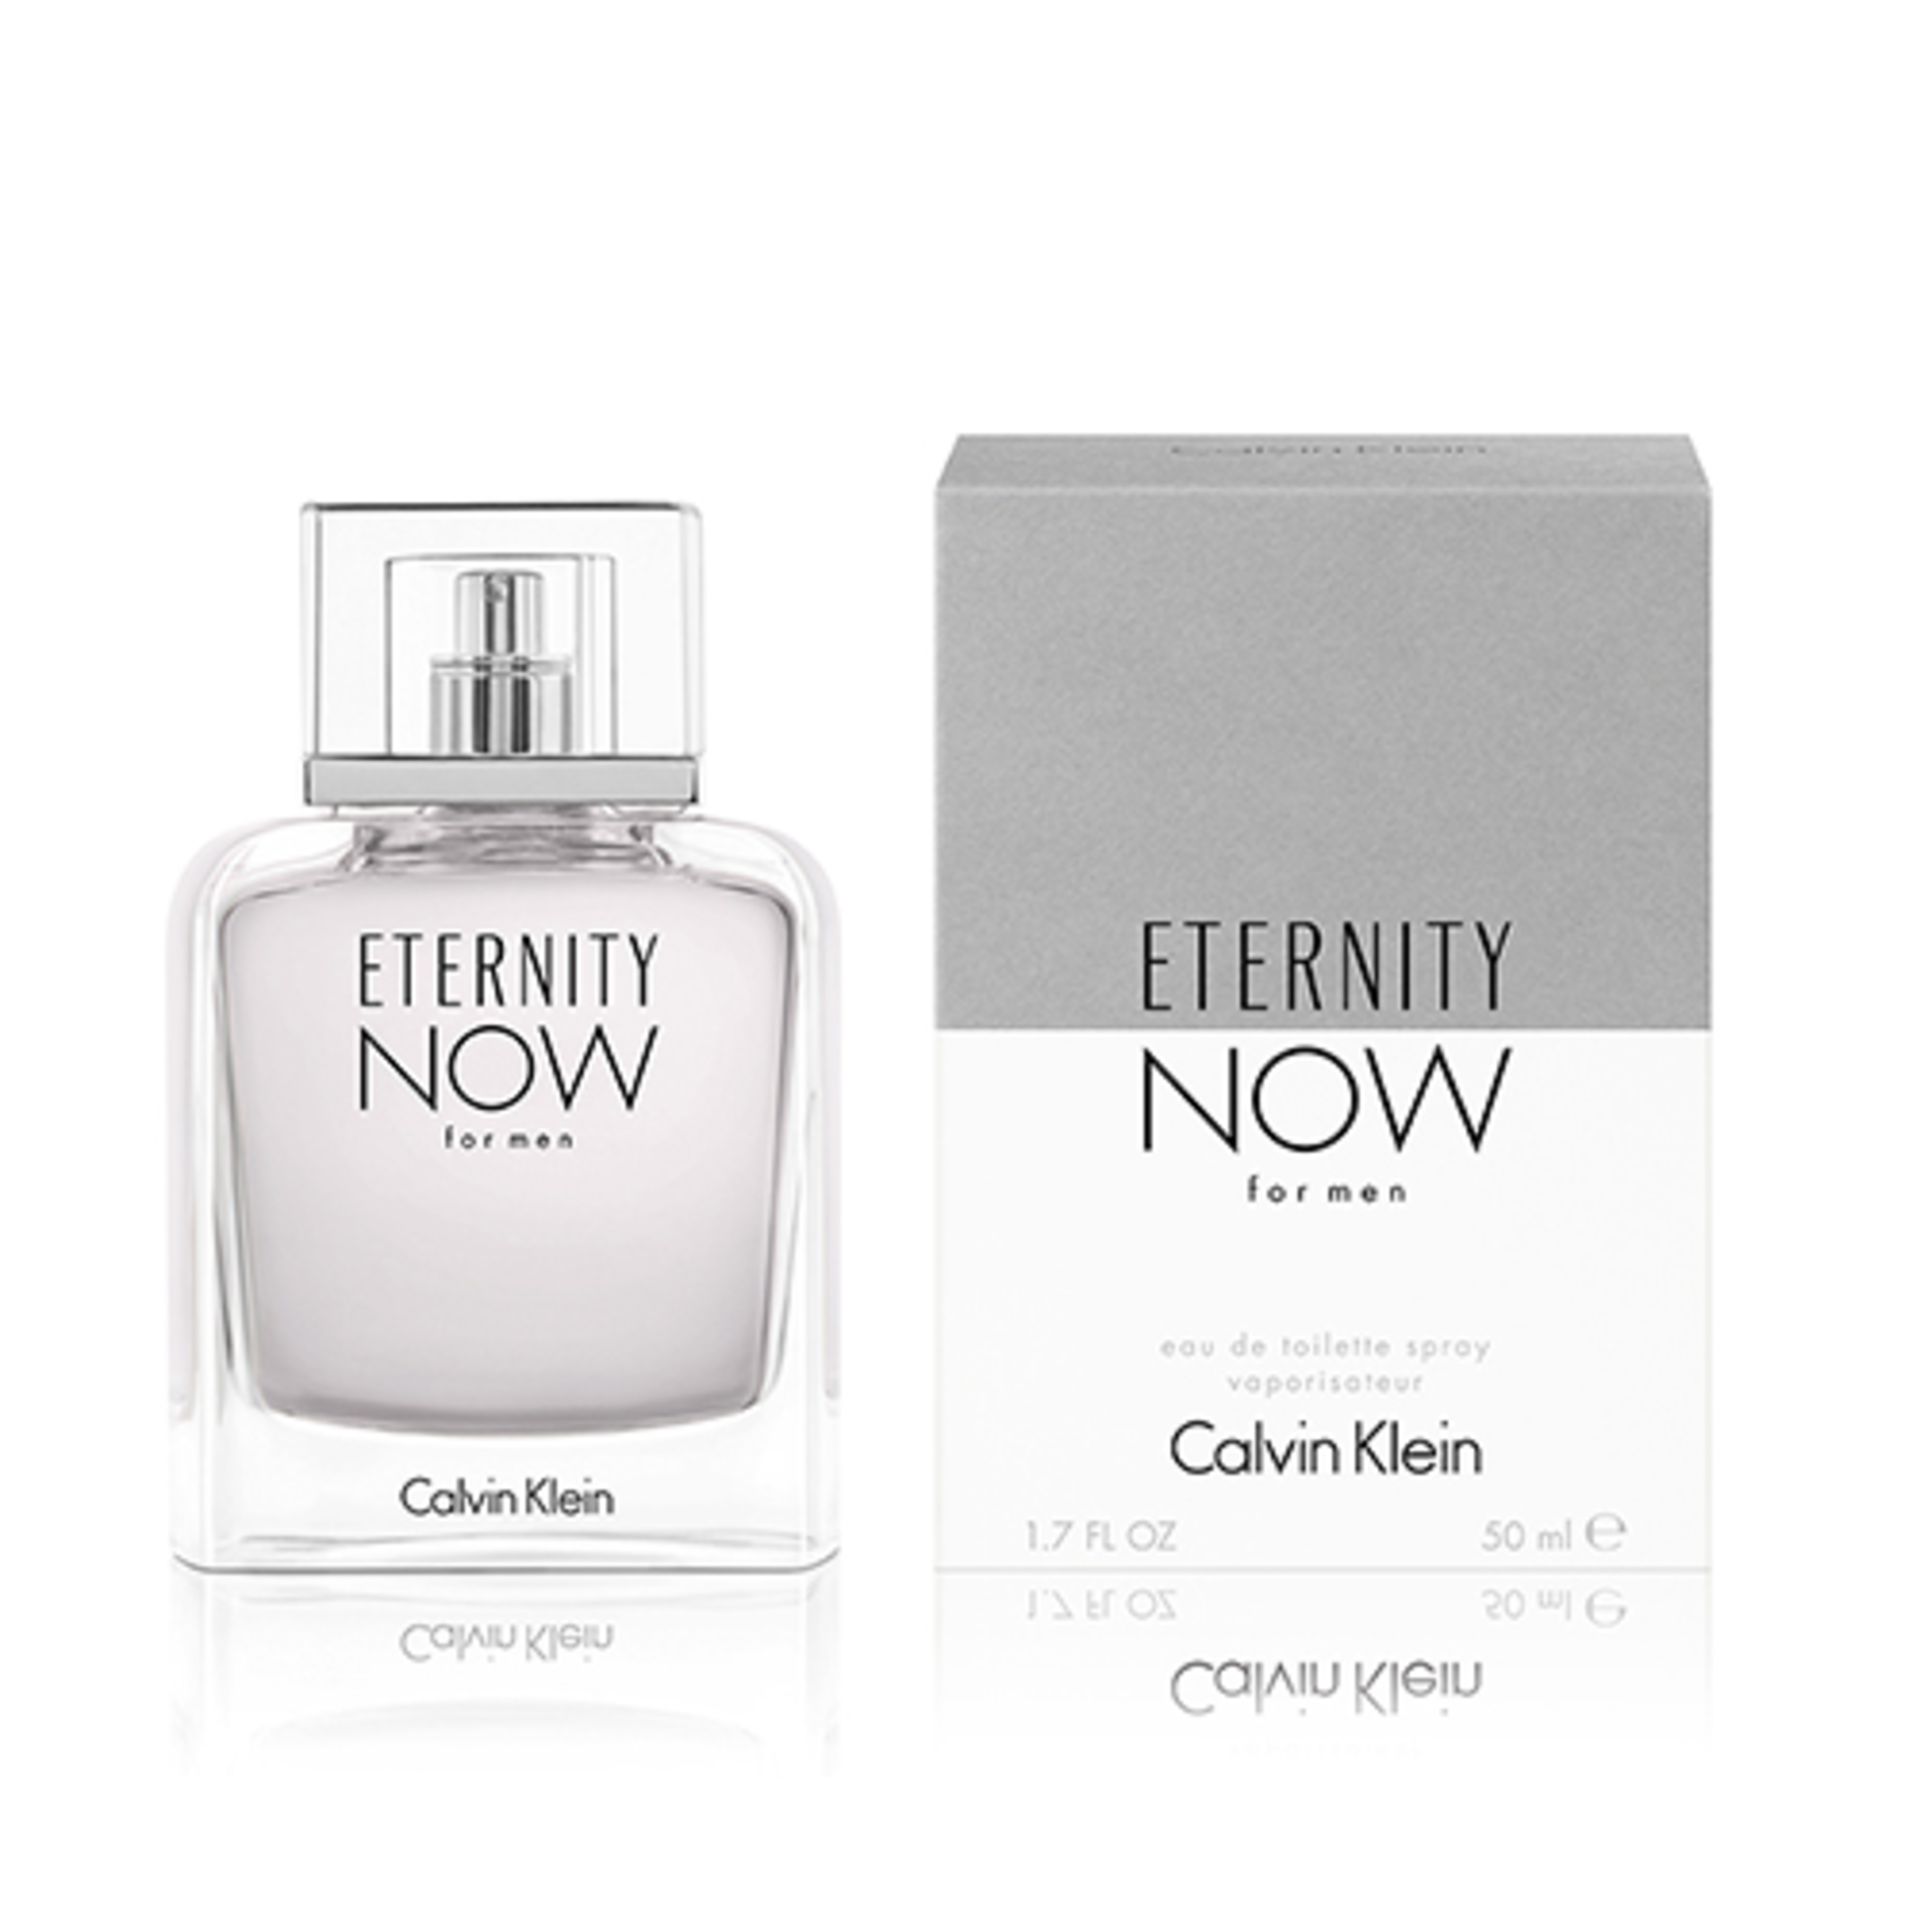 V Brand New Calvin Klein CK Eternity Now For Men EDT 30ml Debenhams Price £33.00 X 2 YOUR BID - Image 2 of 2